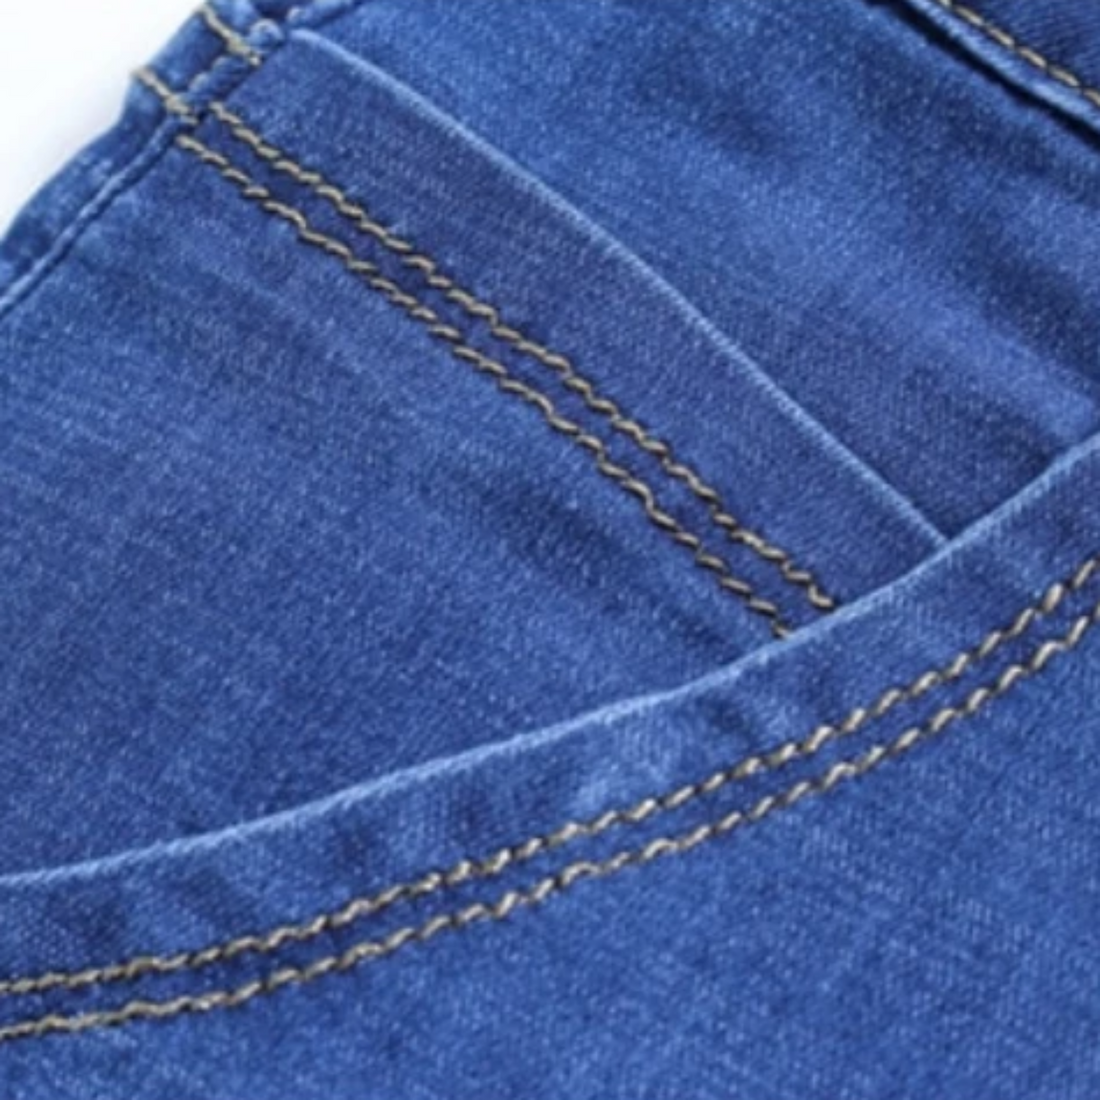 Men's Summer Denim Elastic Slim Shorts | Plus Size